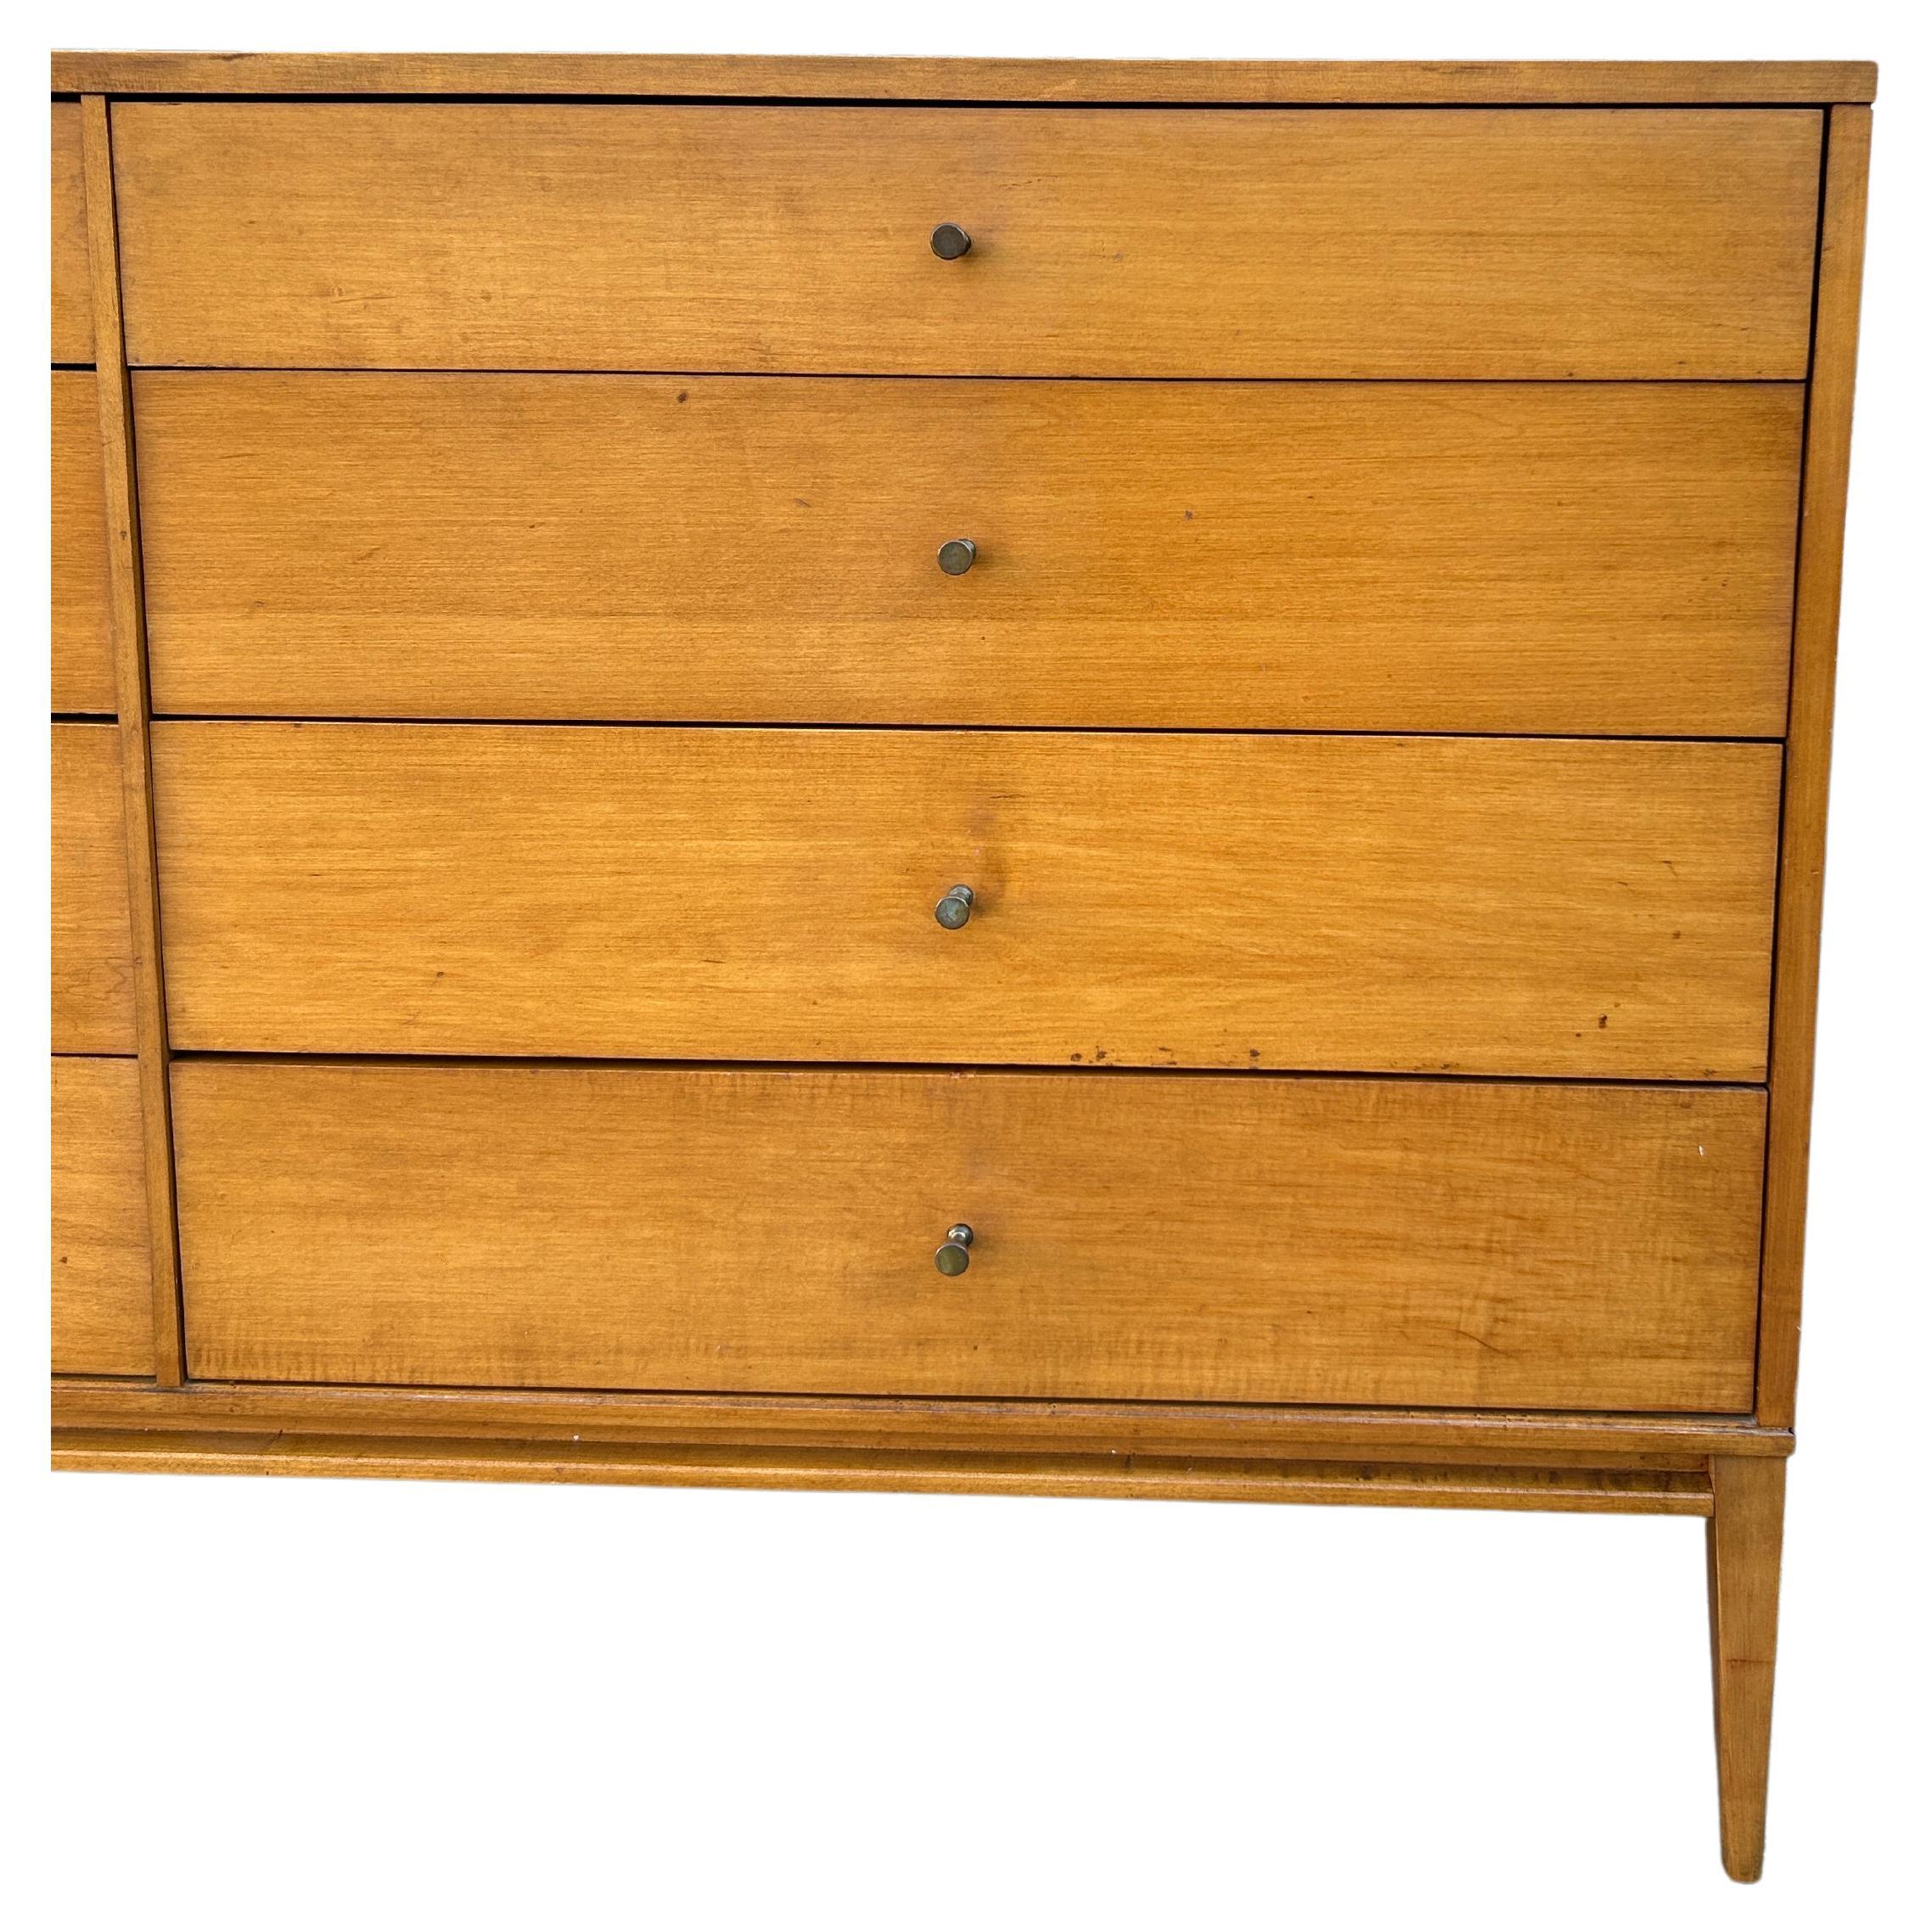 American Mid-Century Paul McCobb 8-Drawer Dresser Credenza #1507 Blonde Maple Brass Pulls